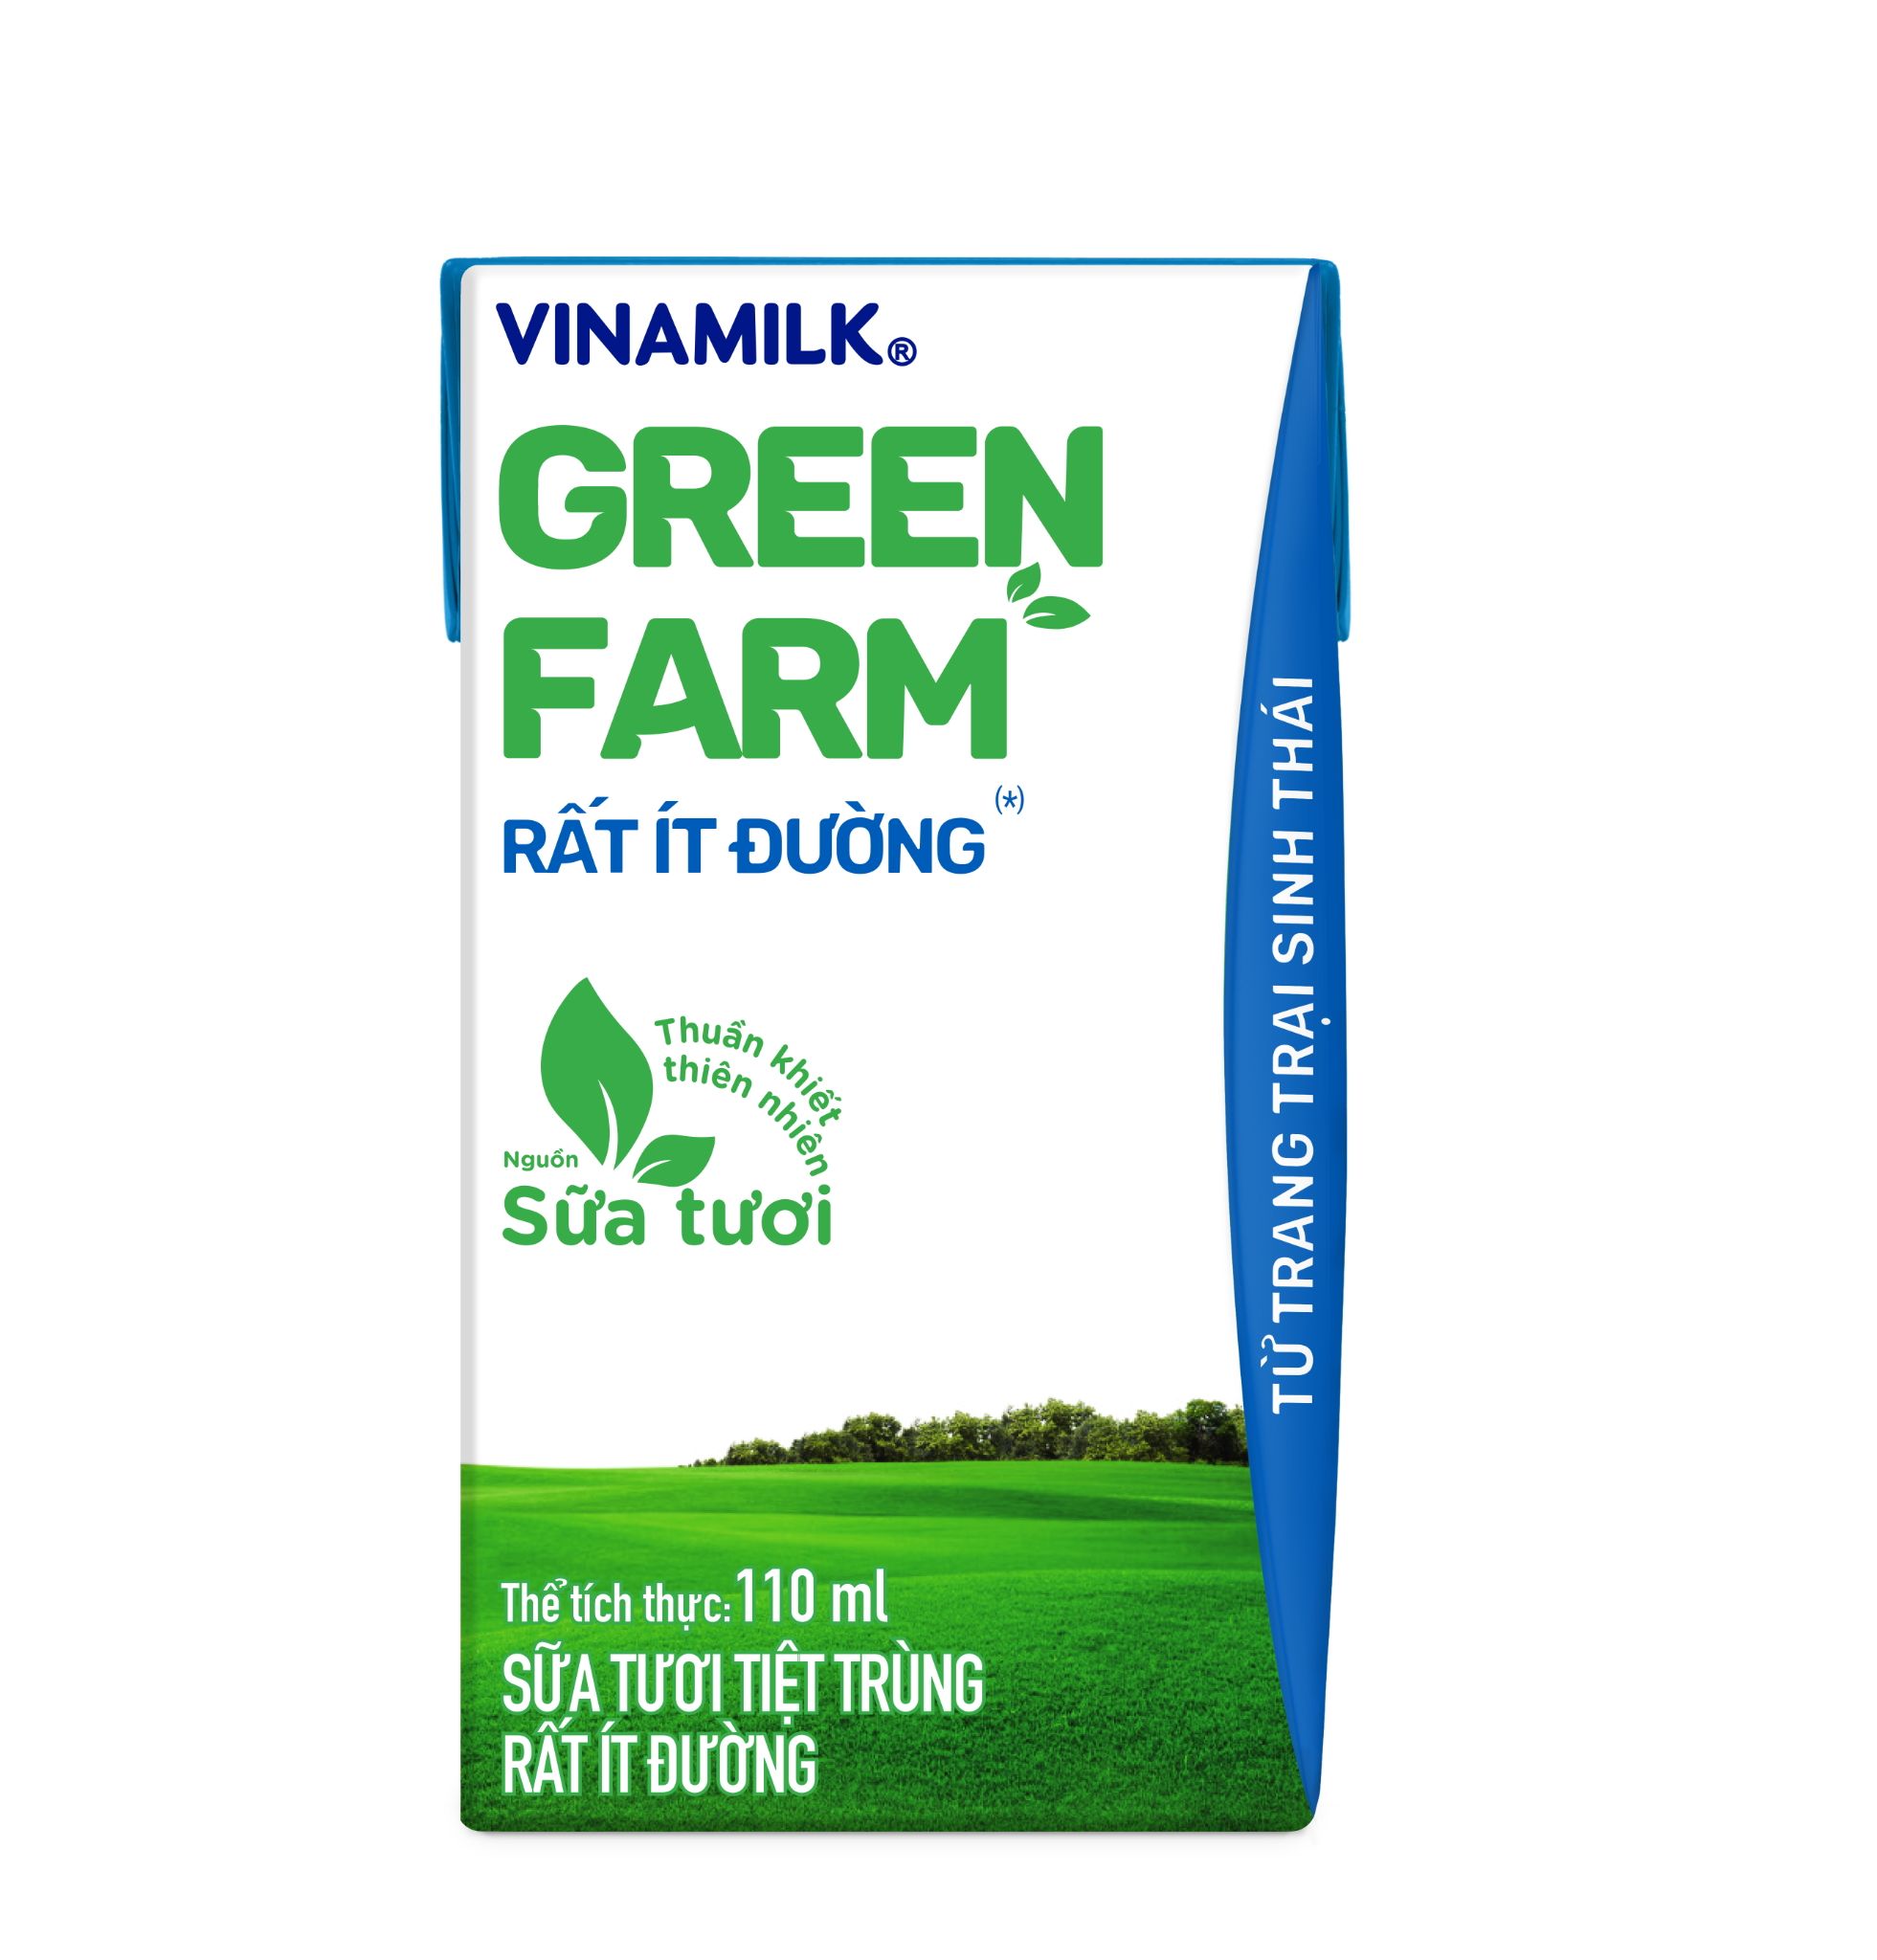 Sữa Tươi Tiệt Trùng Vinamilk Green Farm Rất ít đường - Lốc 4 hộp x 110ml